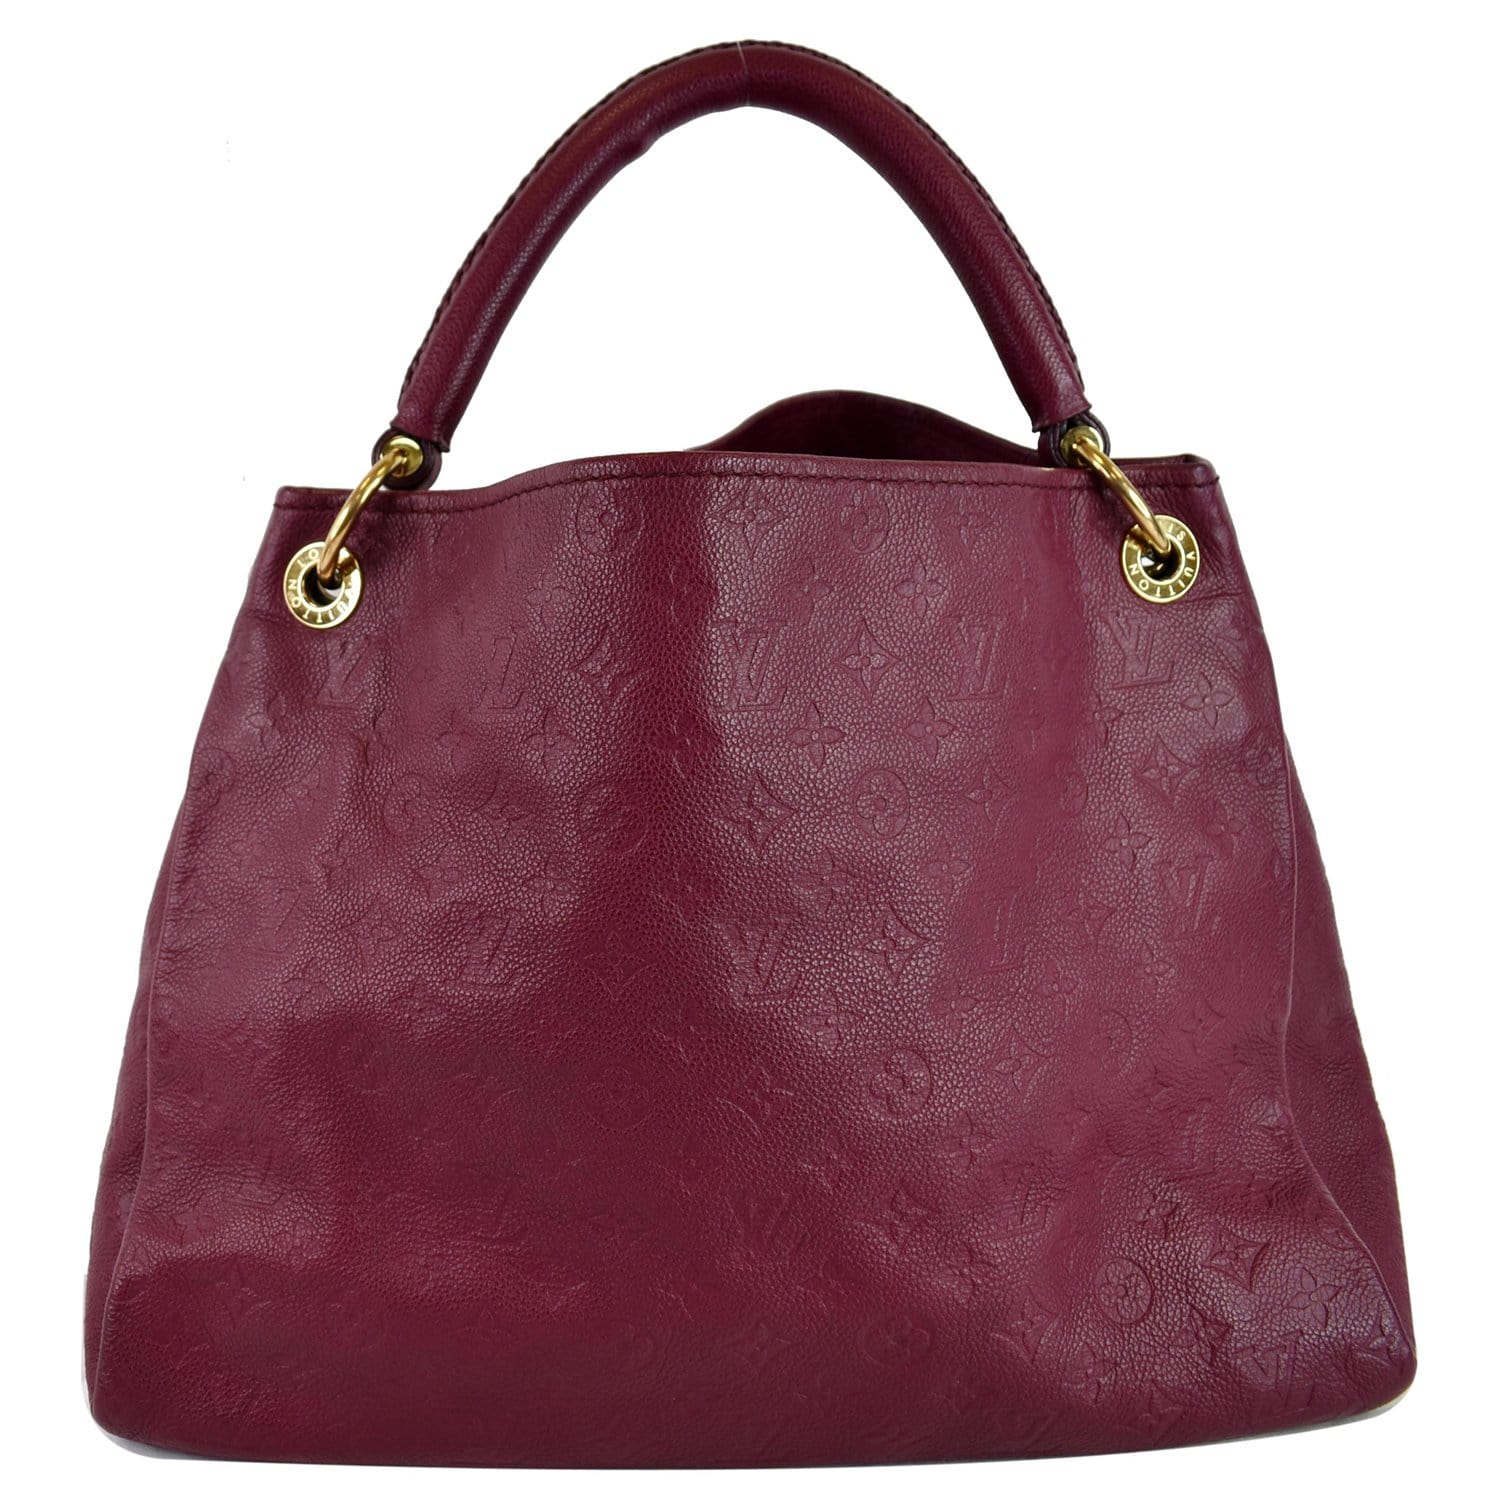 Original Handbag Hardware Protectors for Louis Vuitton Mulberry Chloe –  Havre de Luxe